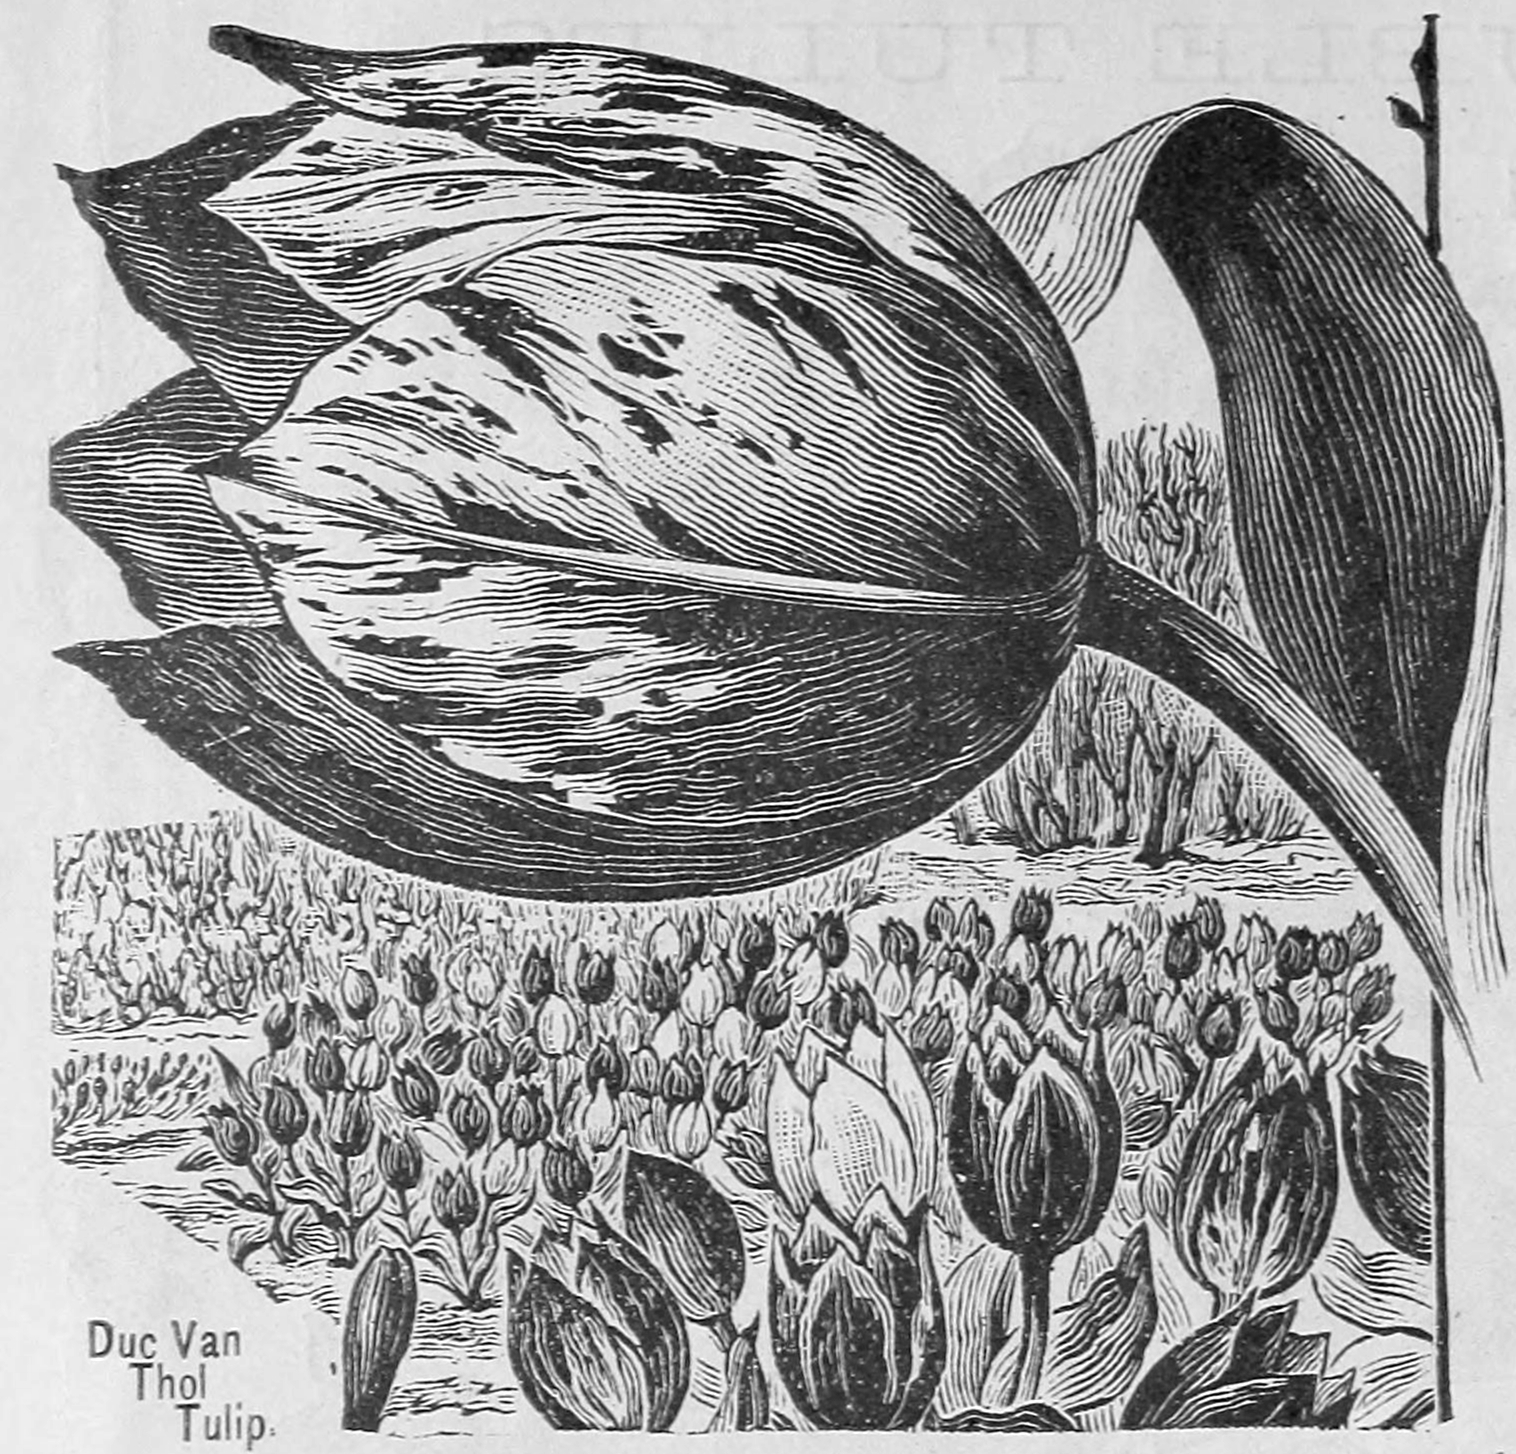 data-deluge-tulip-mania-1637